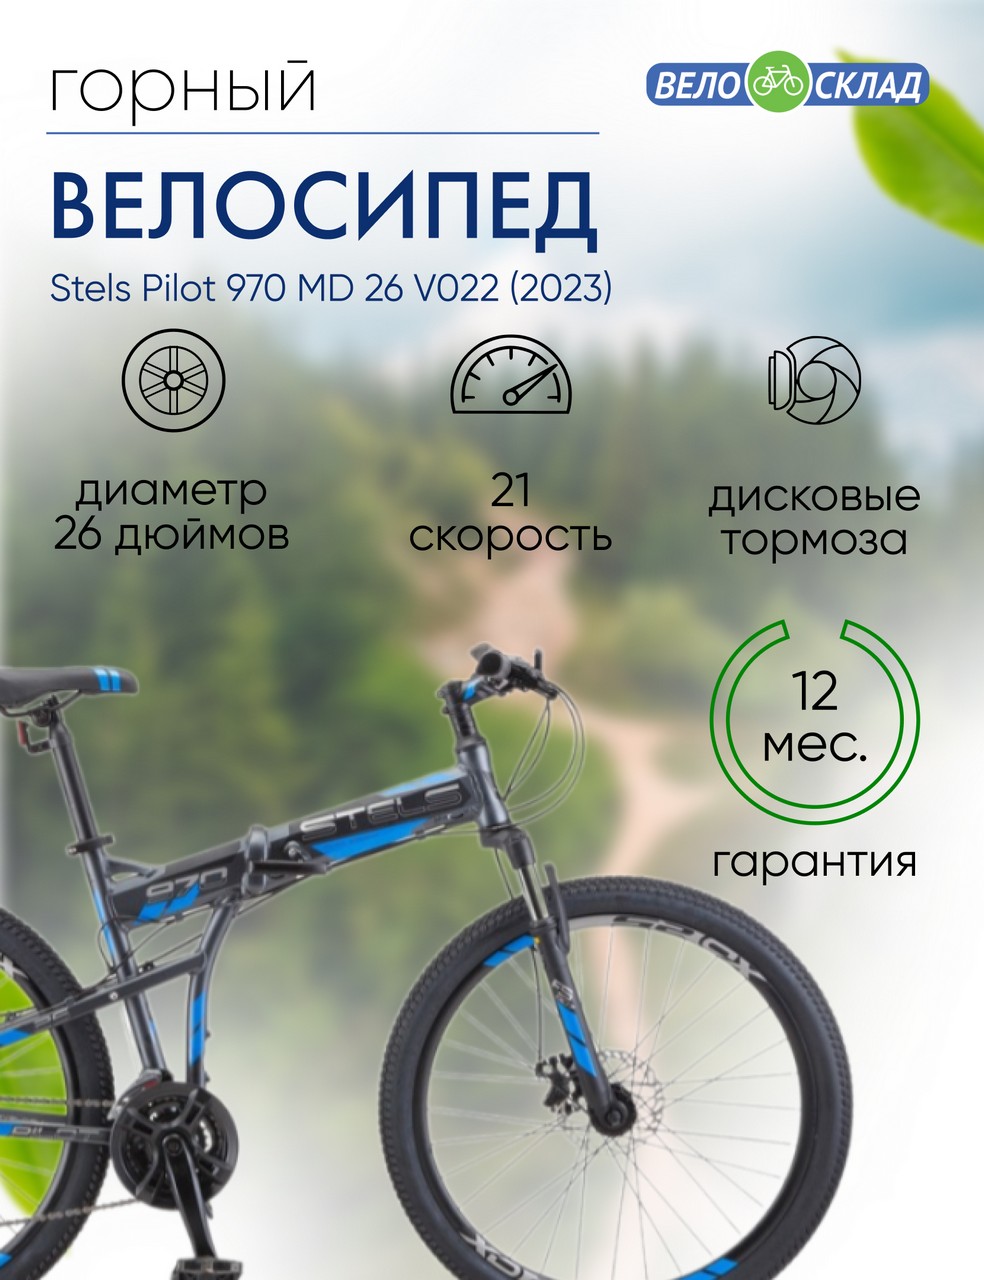 Складной велосипед Stels Pilot 970 MD 26 V022, год 2023, цвет Серебристый, ростовка 19